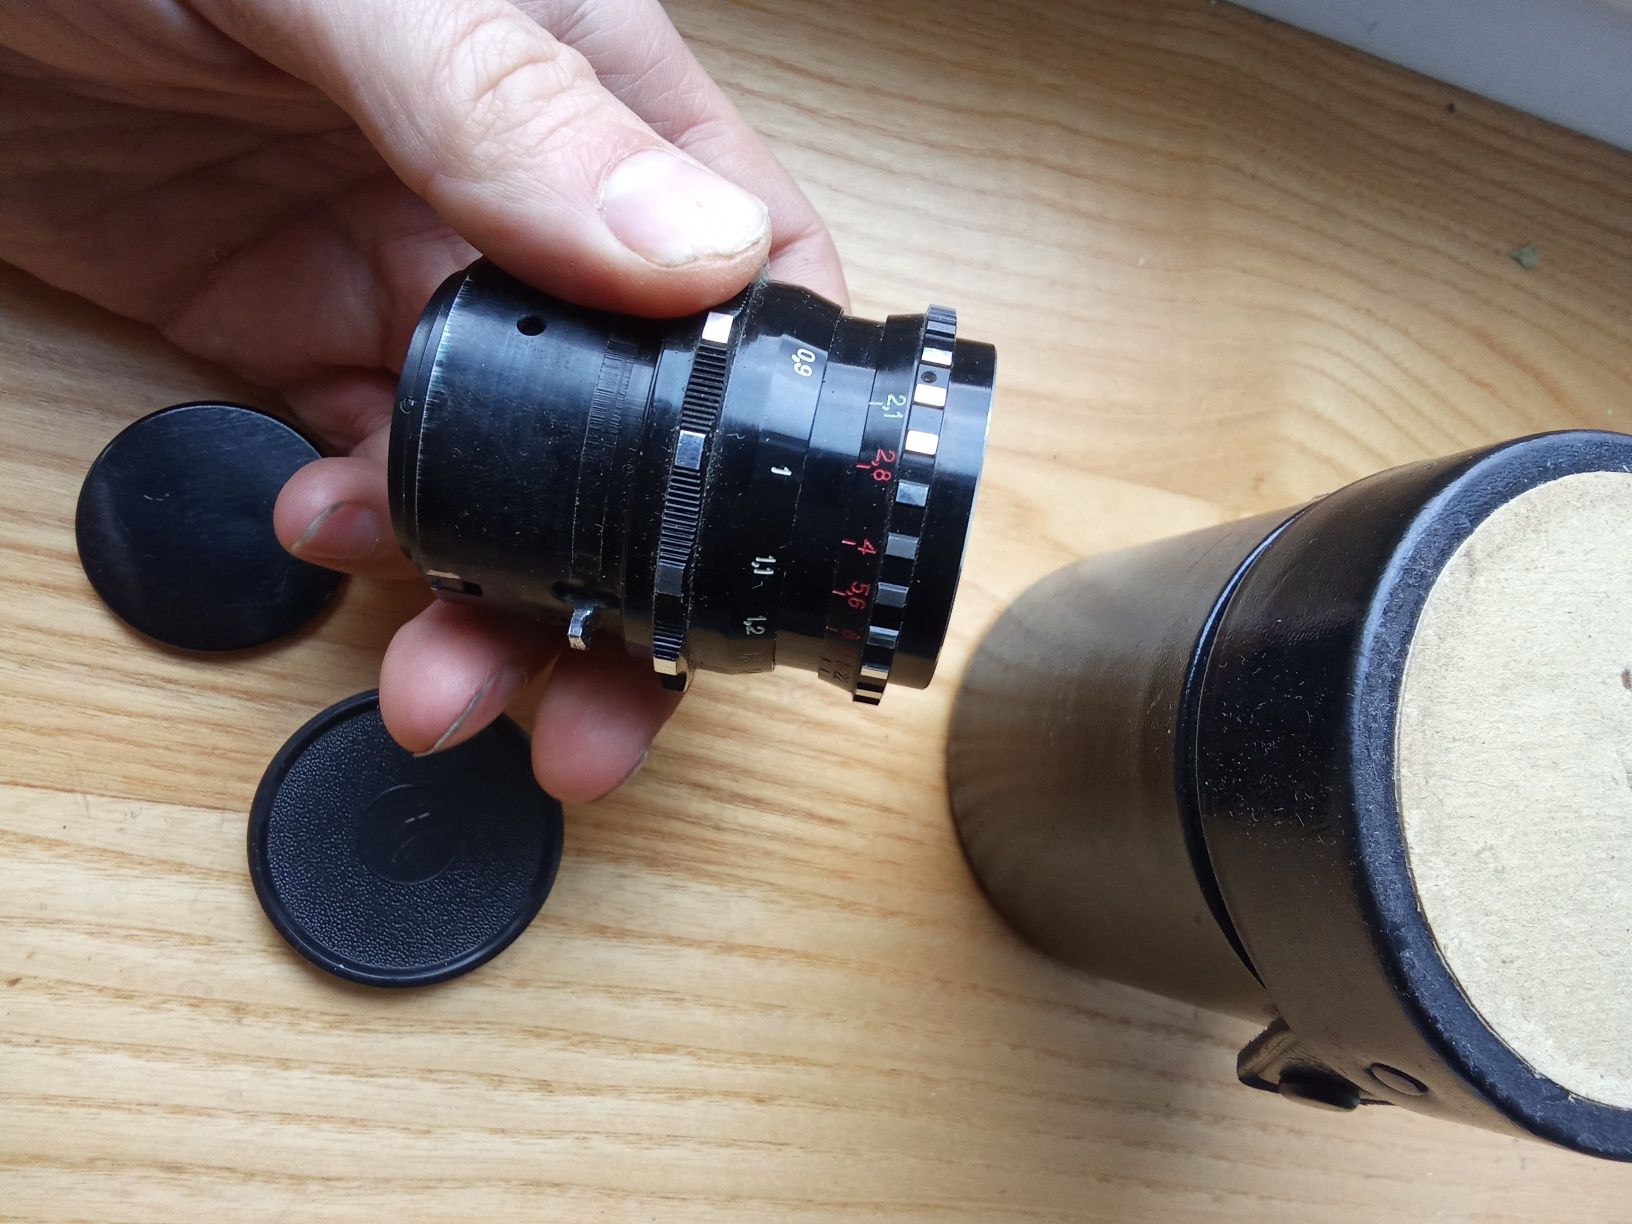 Obiektyw kinowy  Vega 9 F2.1 zsrr
50mm w dobrym stanie